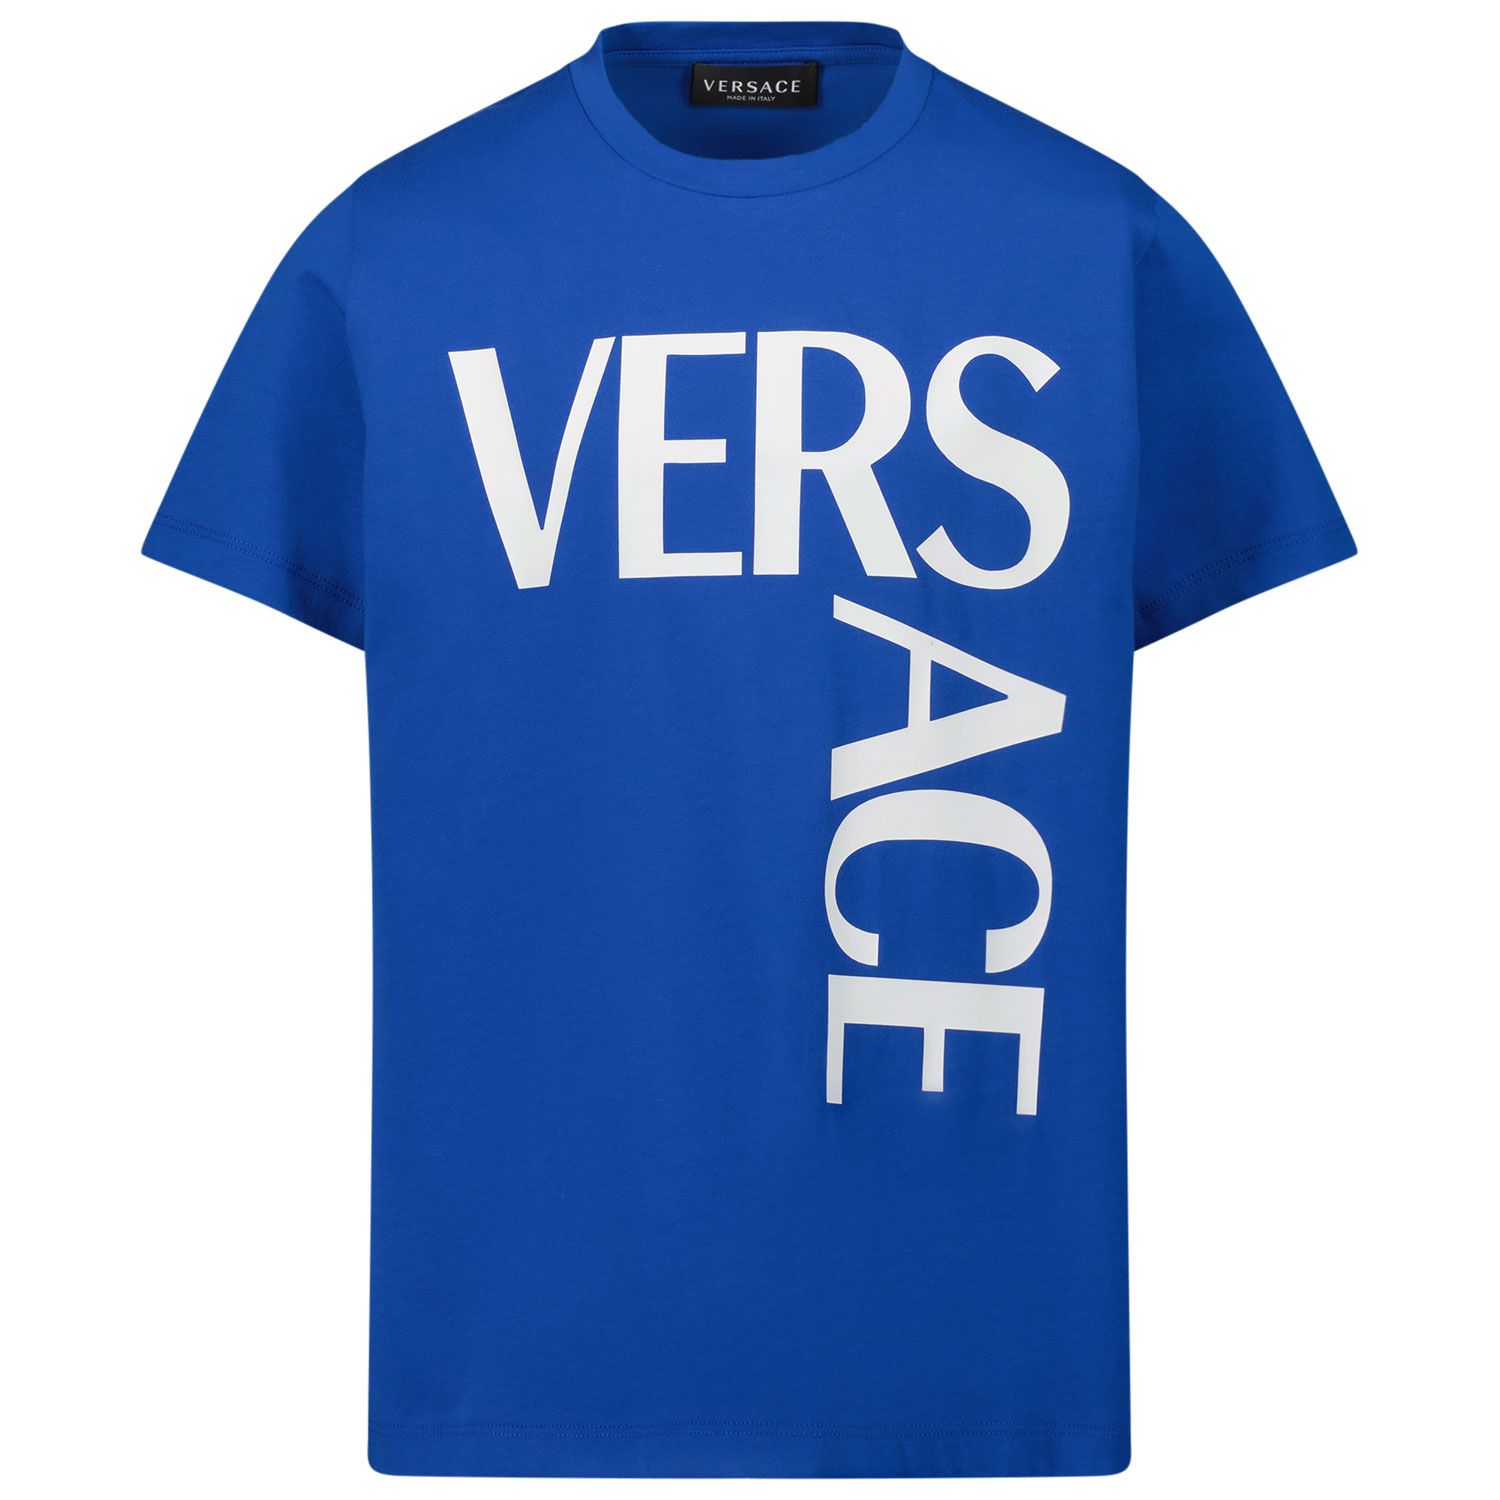 Afbeelding van Versace 1000239 1A01330 kinder t-shirt cobalt blauw